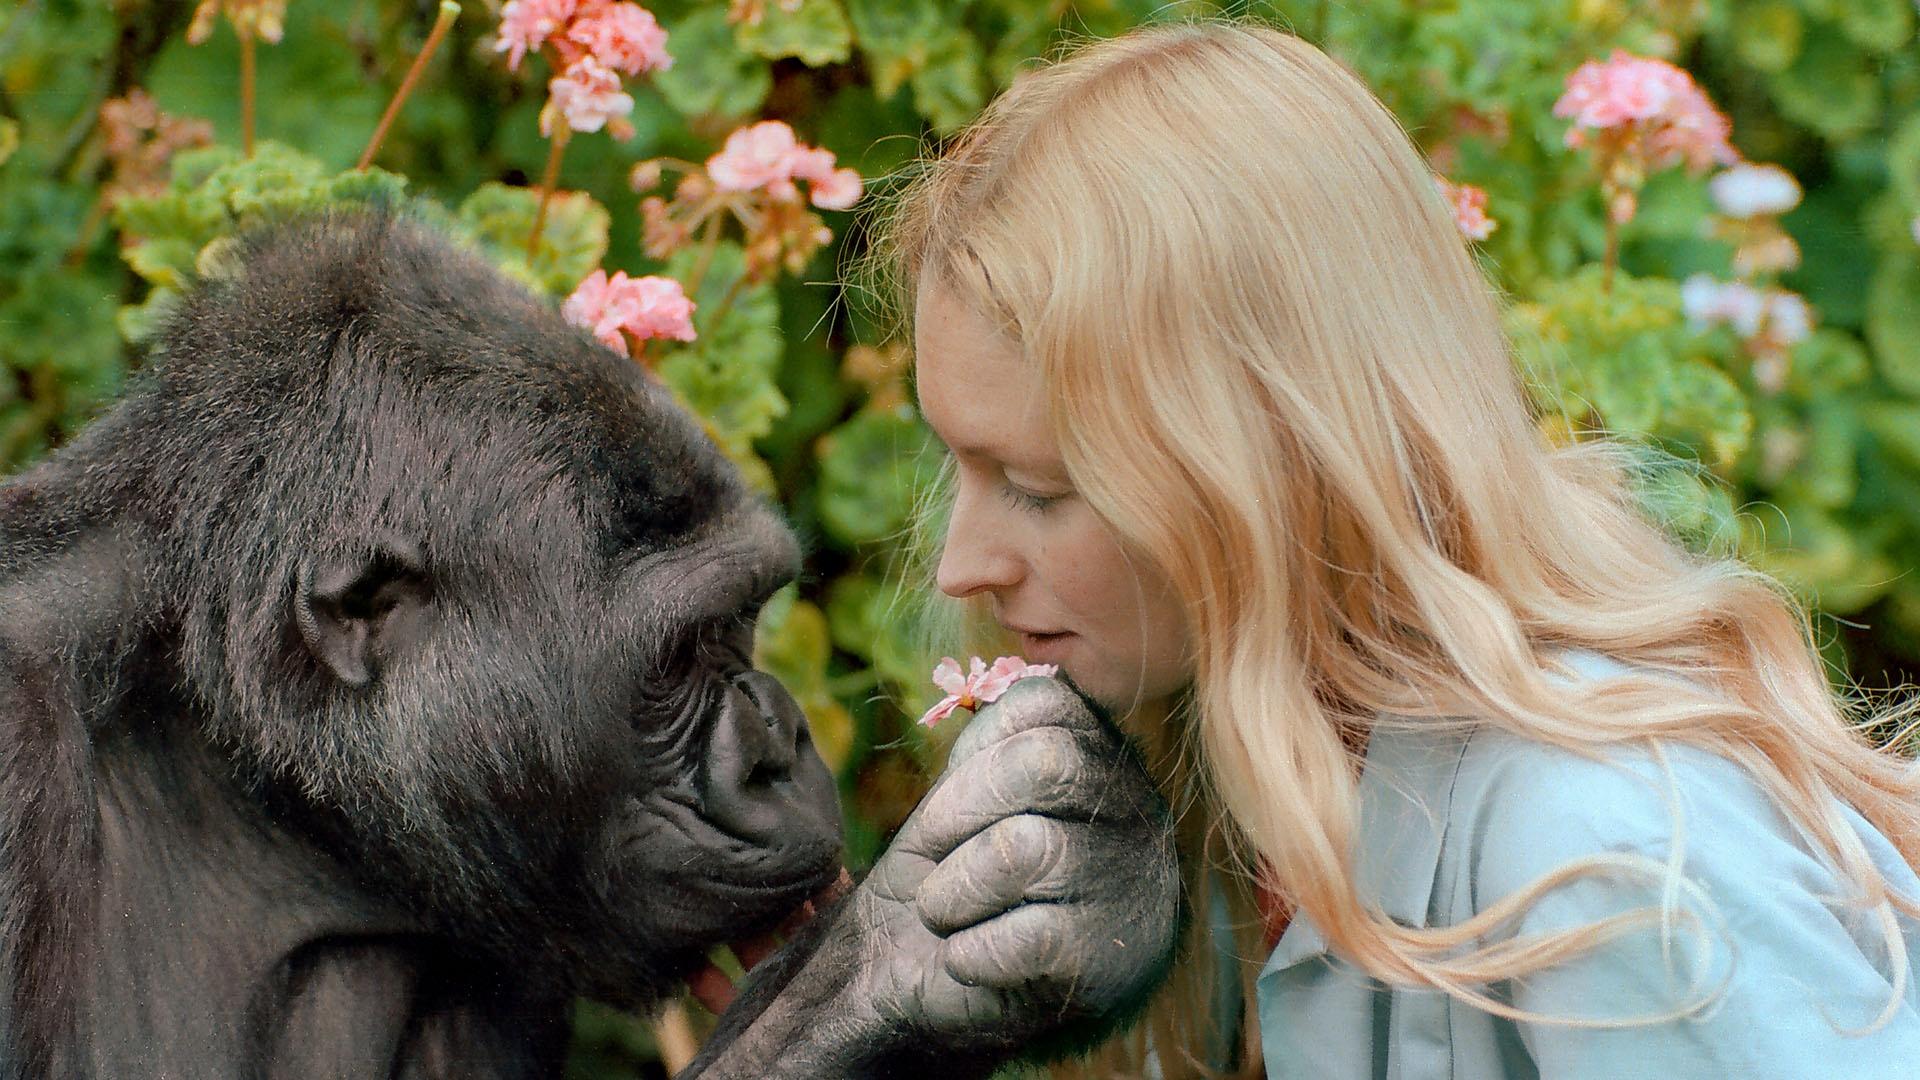 Koko - The Gorilla Who Talks | PBS